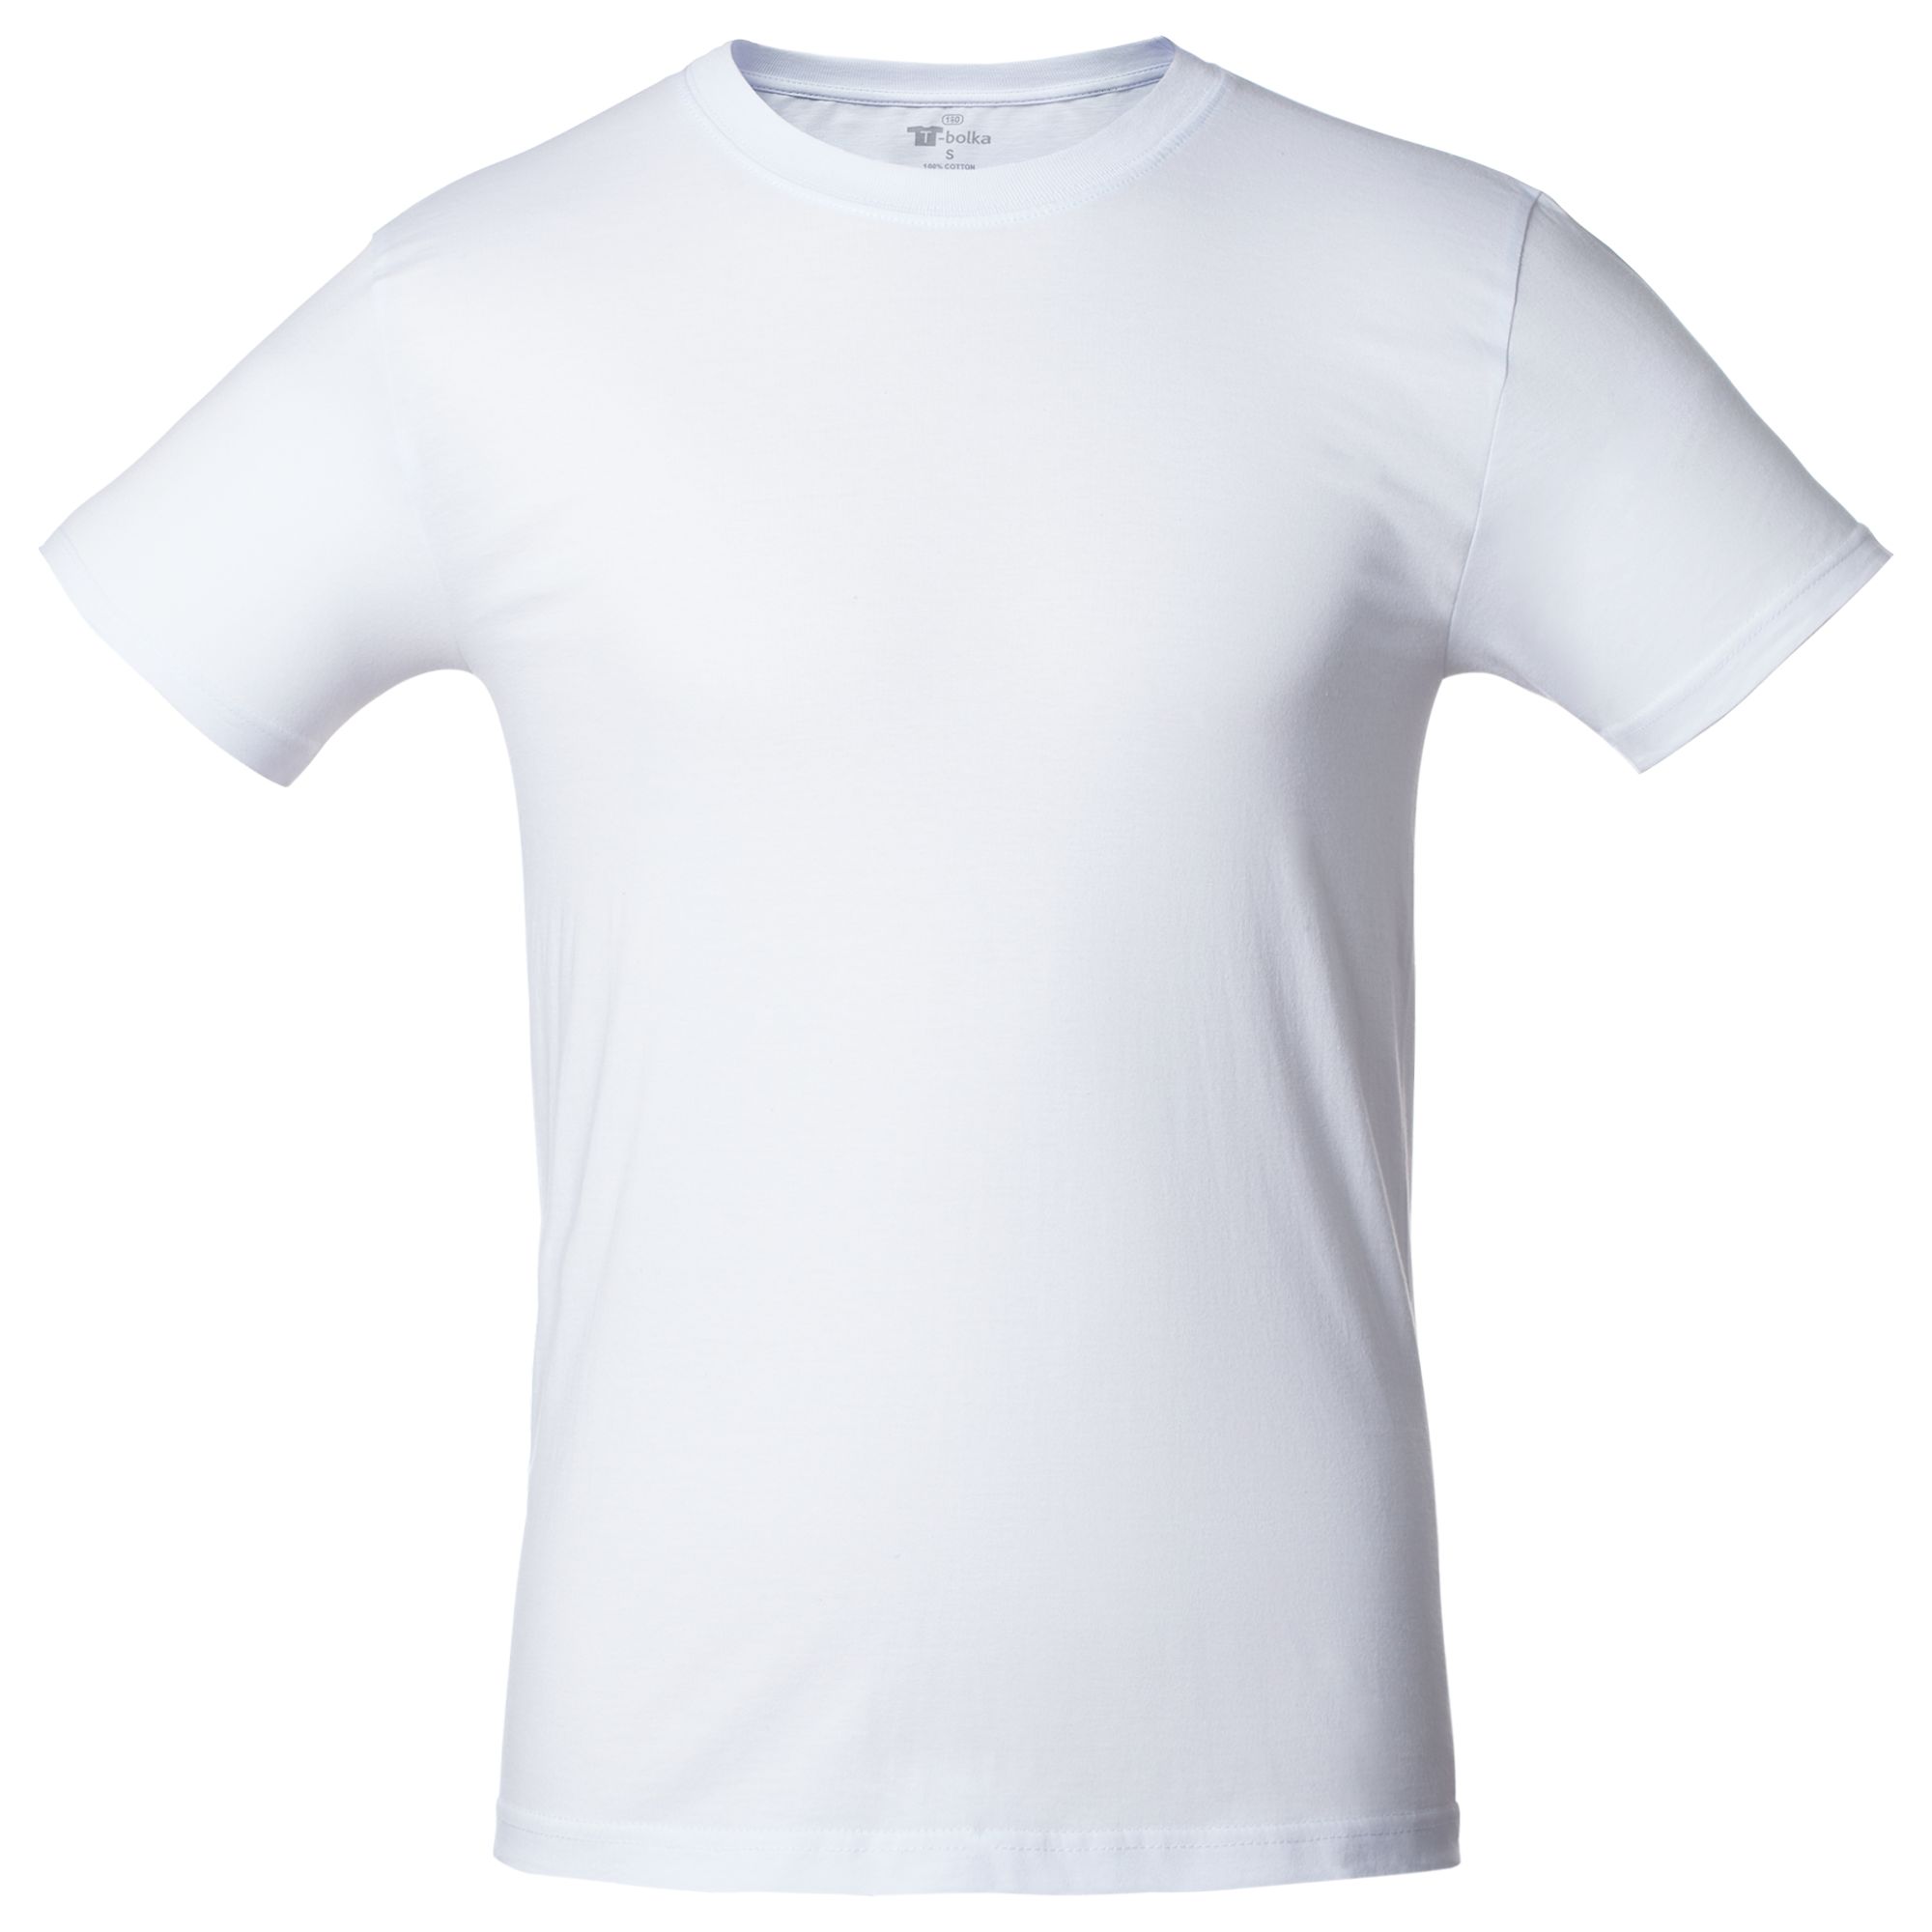 Причины появления пятен на белой футболке